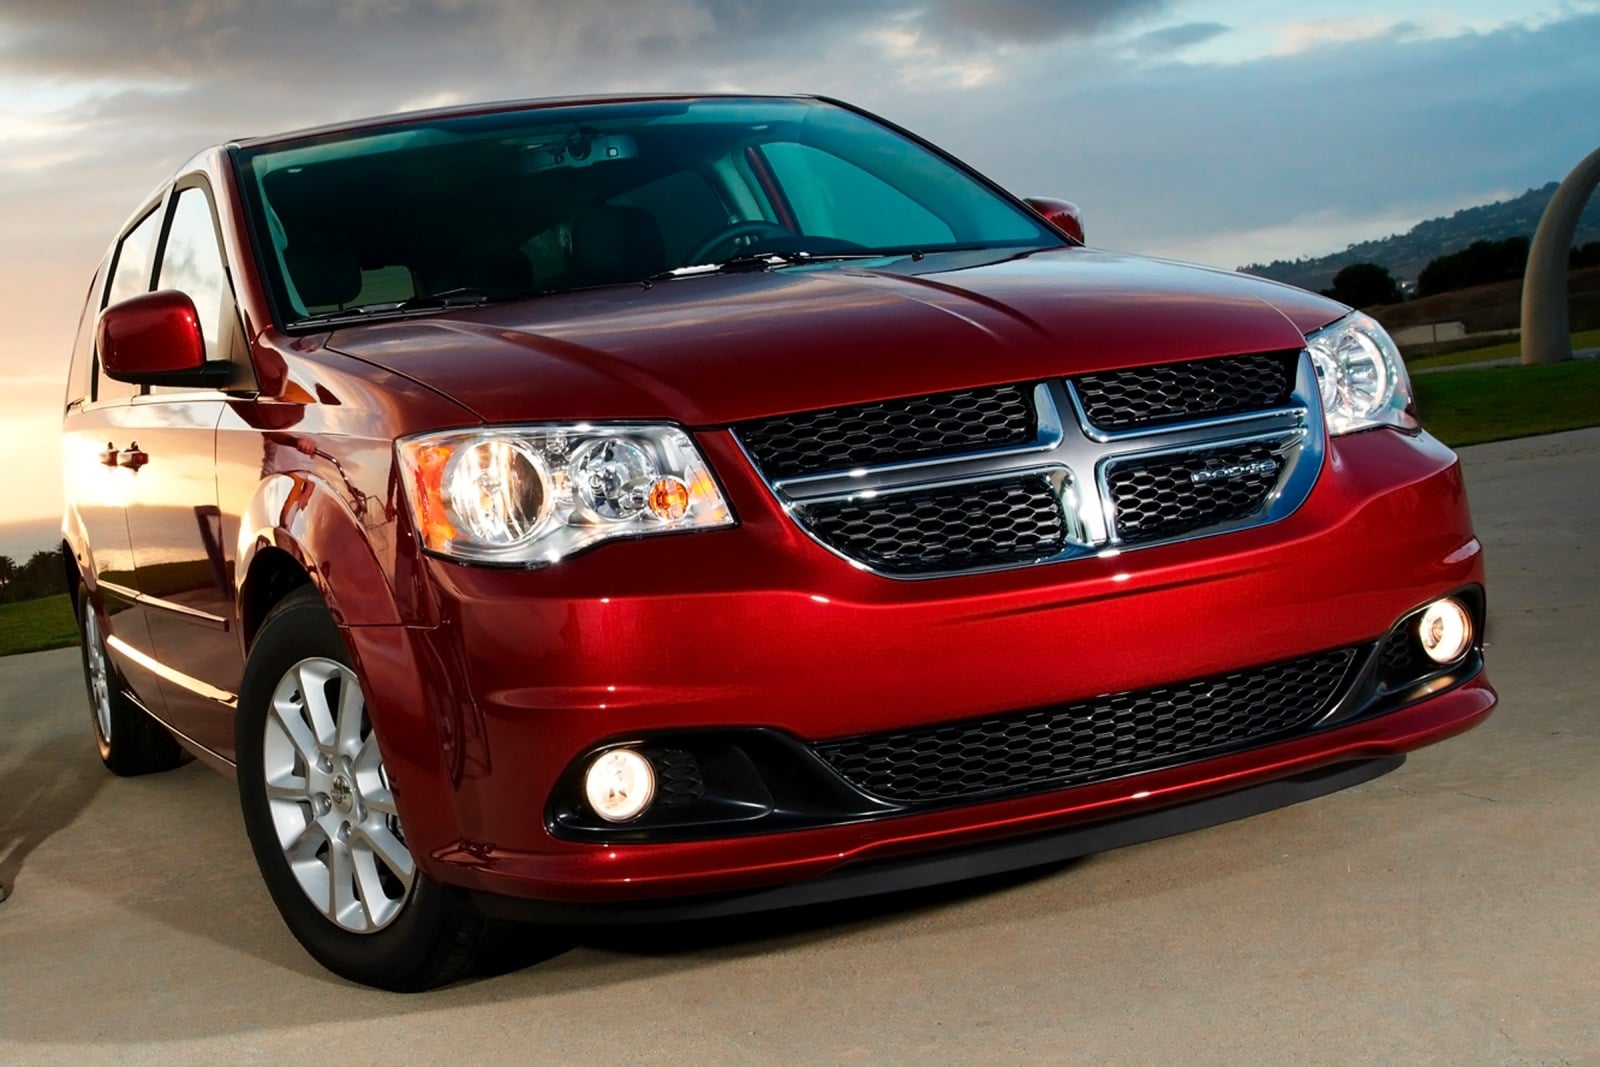 2013 Dodge Grand Caravan Review & Ratings | Edmunds